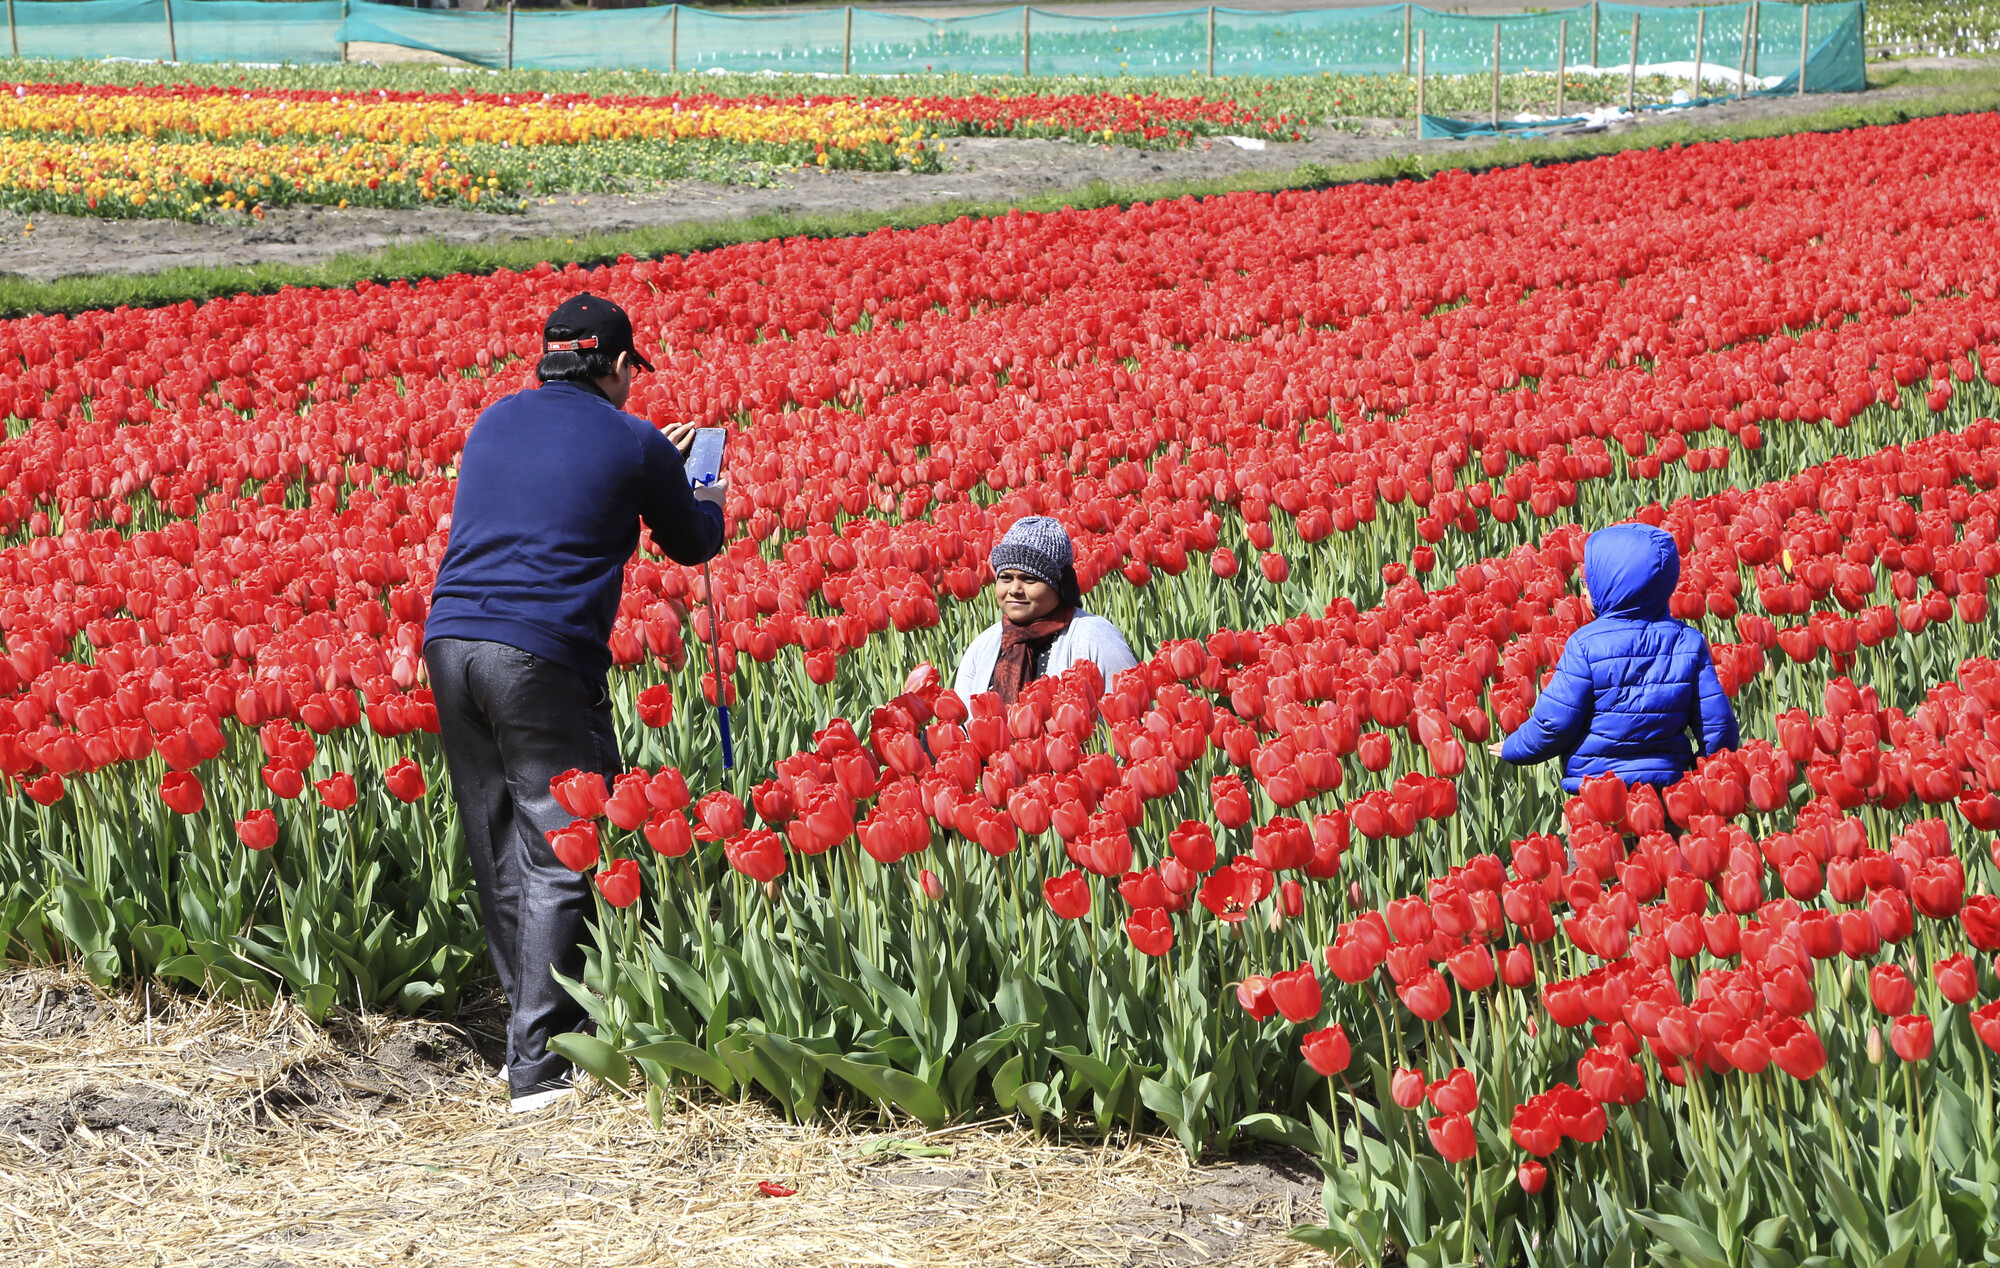 Afbeelding tussen rode tulpen, toeristen in een tulpenveld, man en vrouw die foto's maken, kind tussen het tulpenbollenveld, tulpervaring in Amsterdam, evenementen in Noordwijkerhout, Nederlandse culturele en buitenactiviteiten. Verken de Nederlandse cultuur.